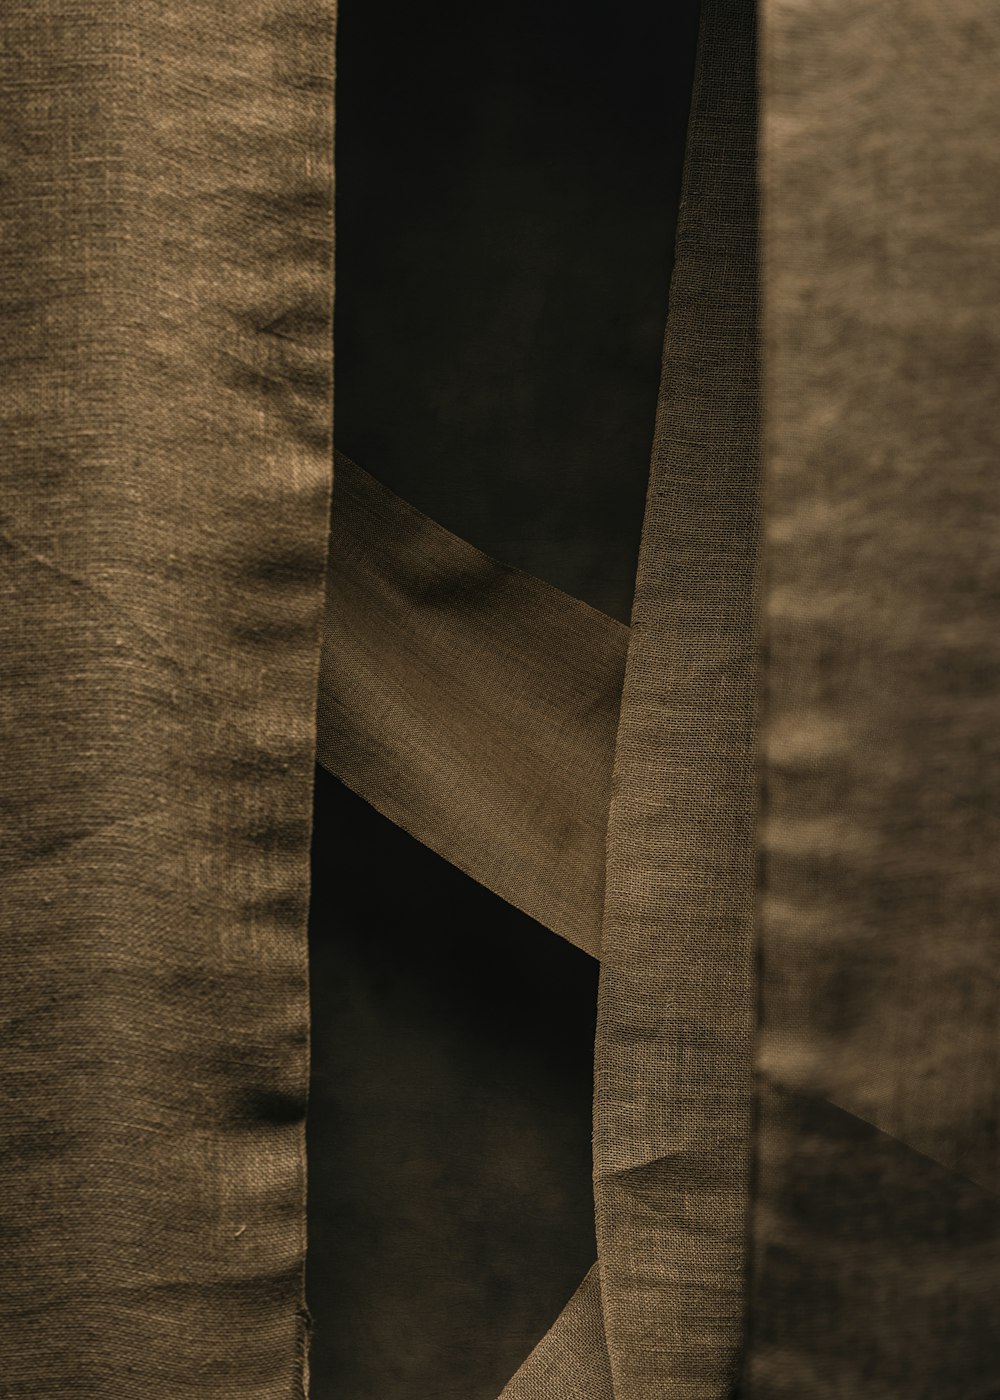 uma foto em preto e branco de uma cortina